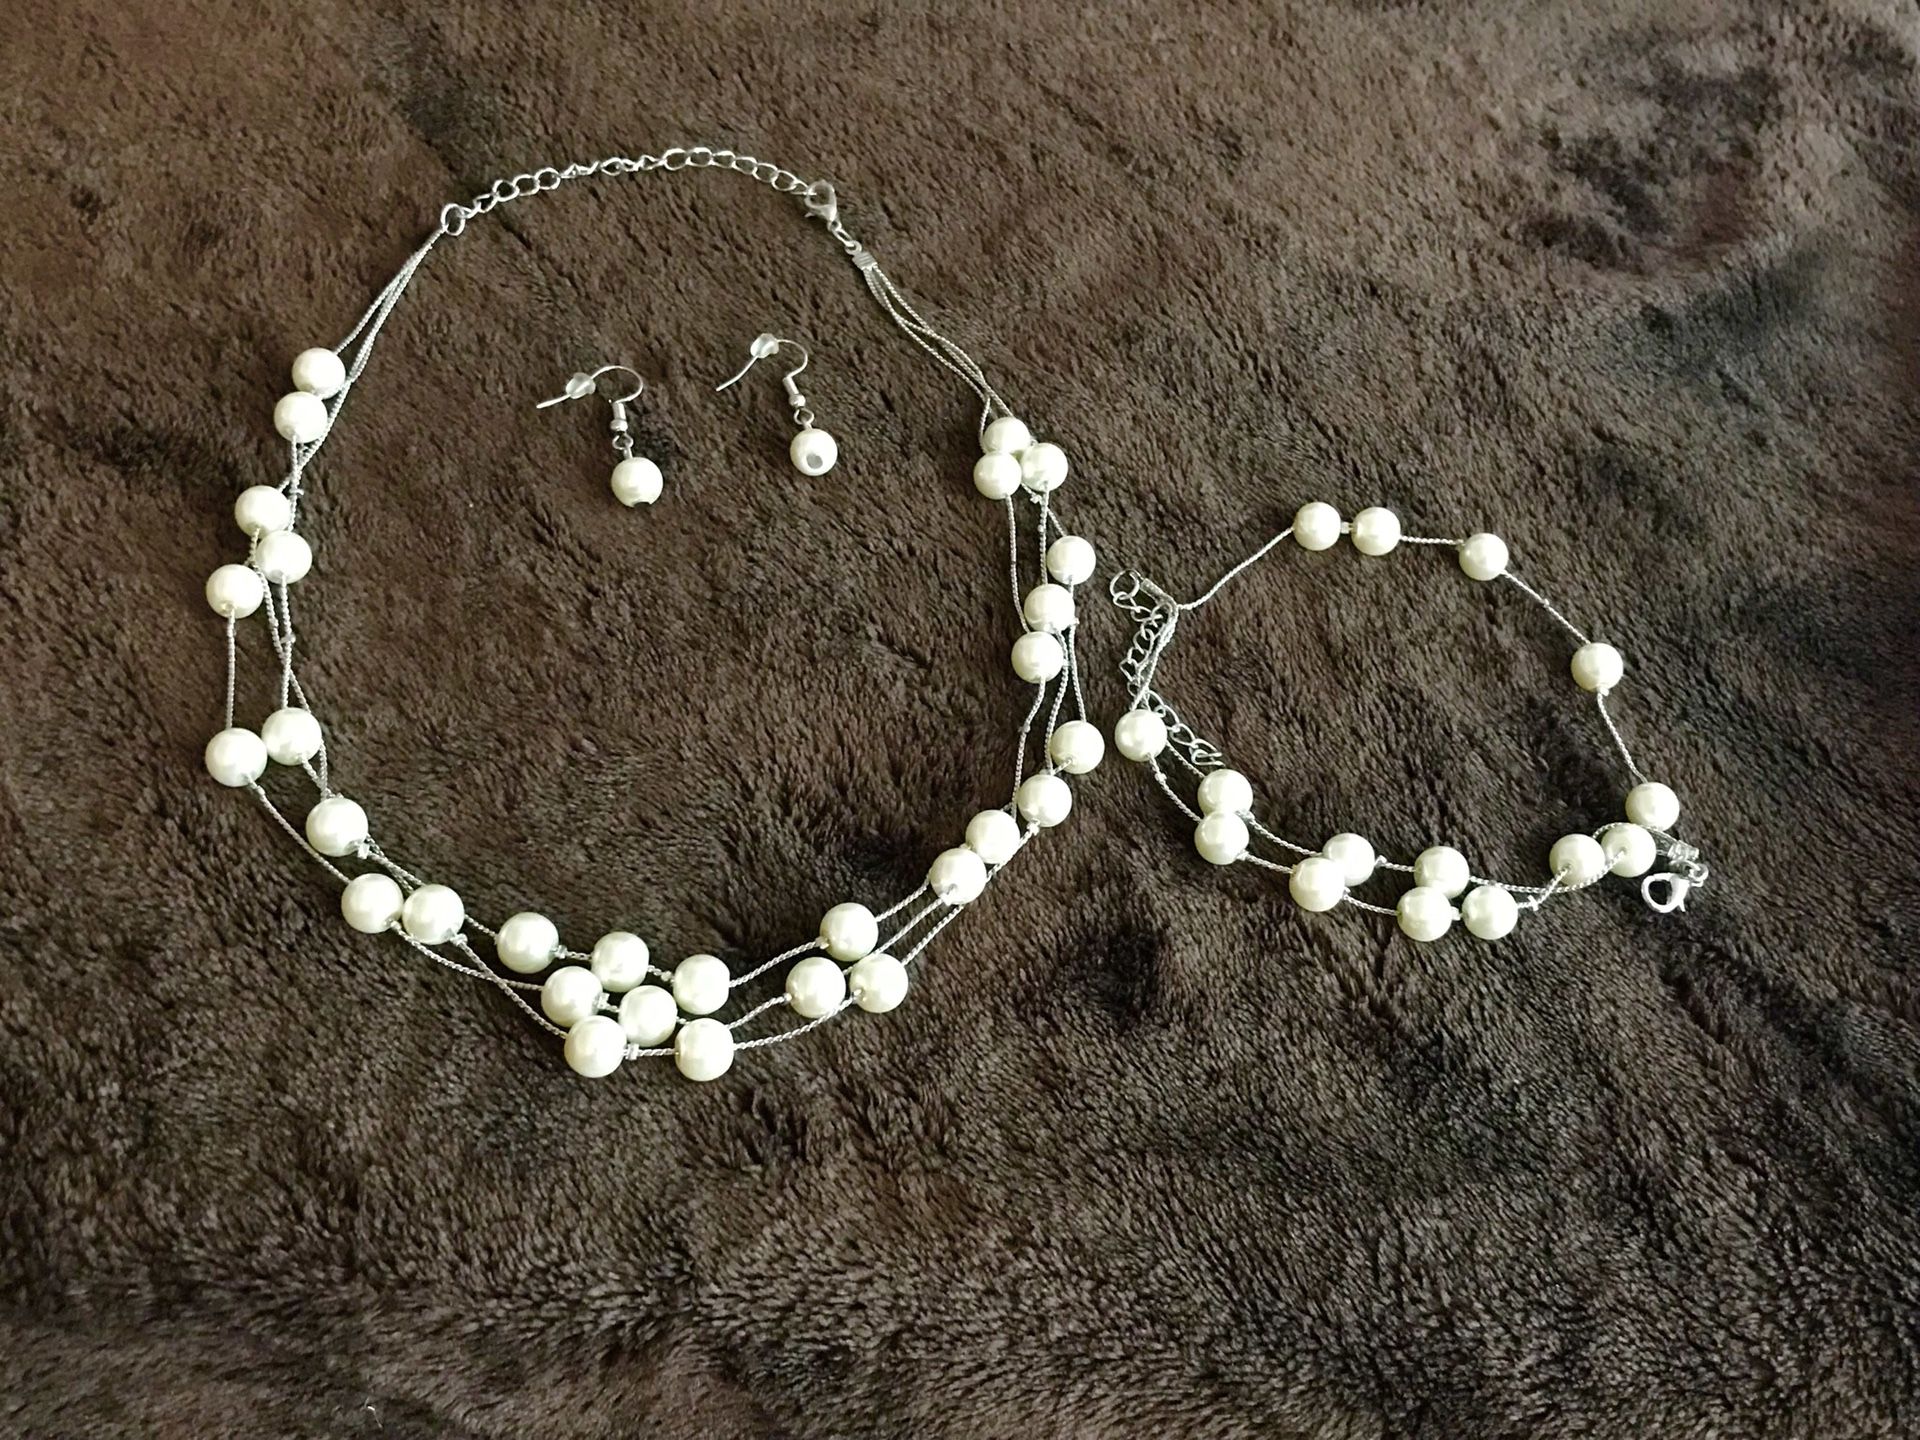 Fancy pearl necklace earrings bracelet